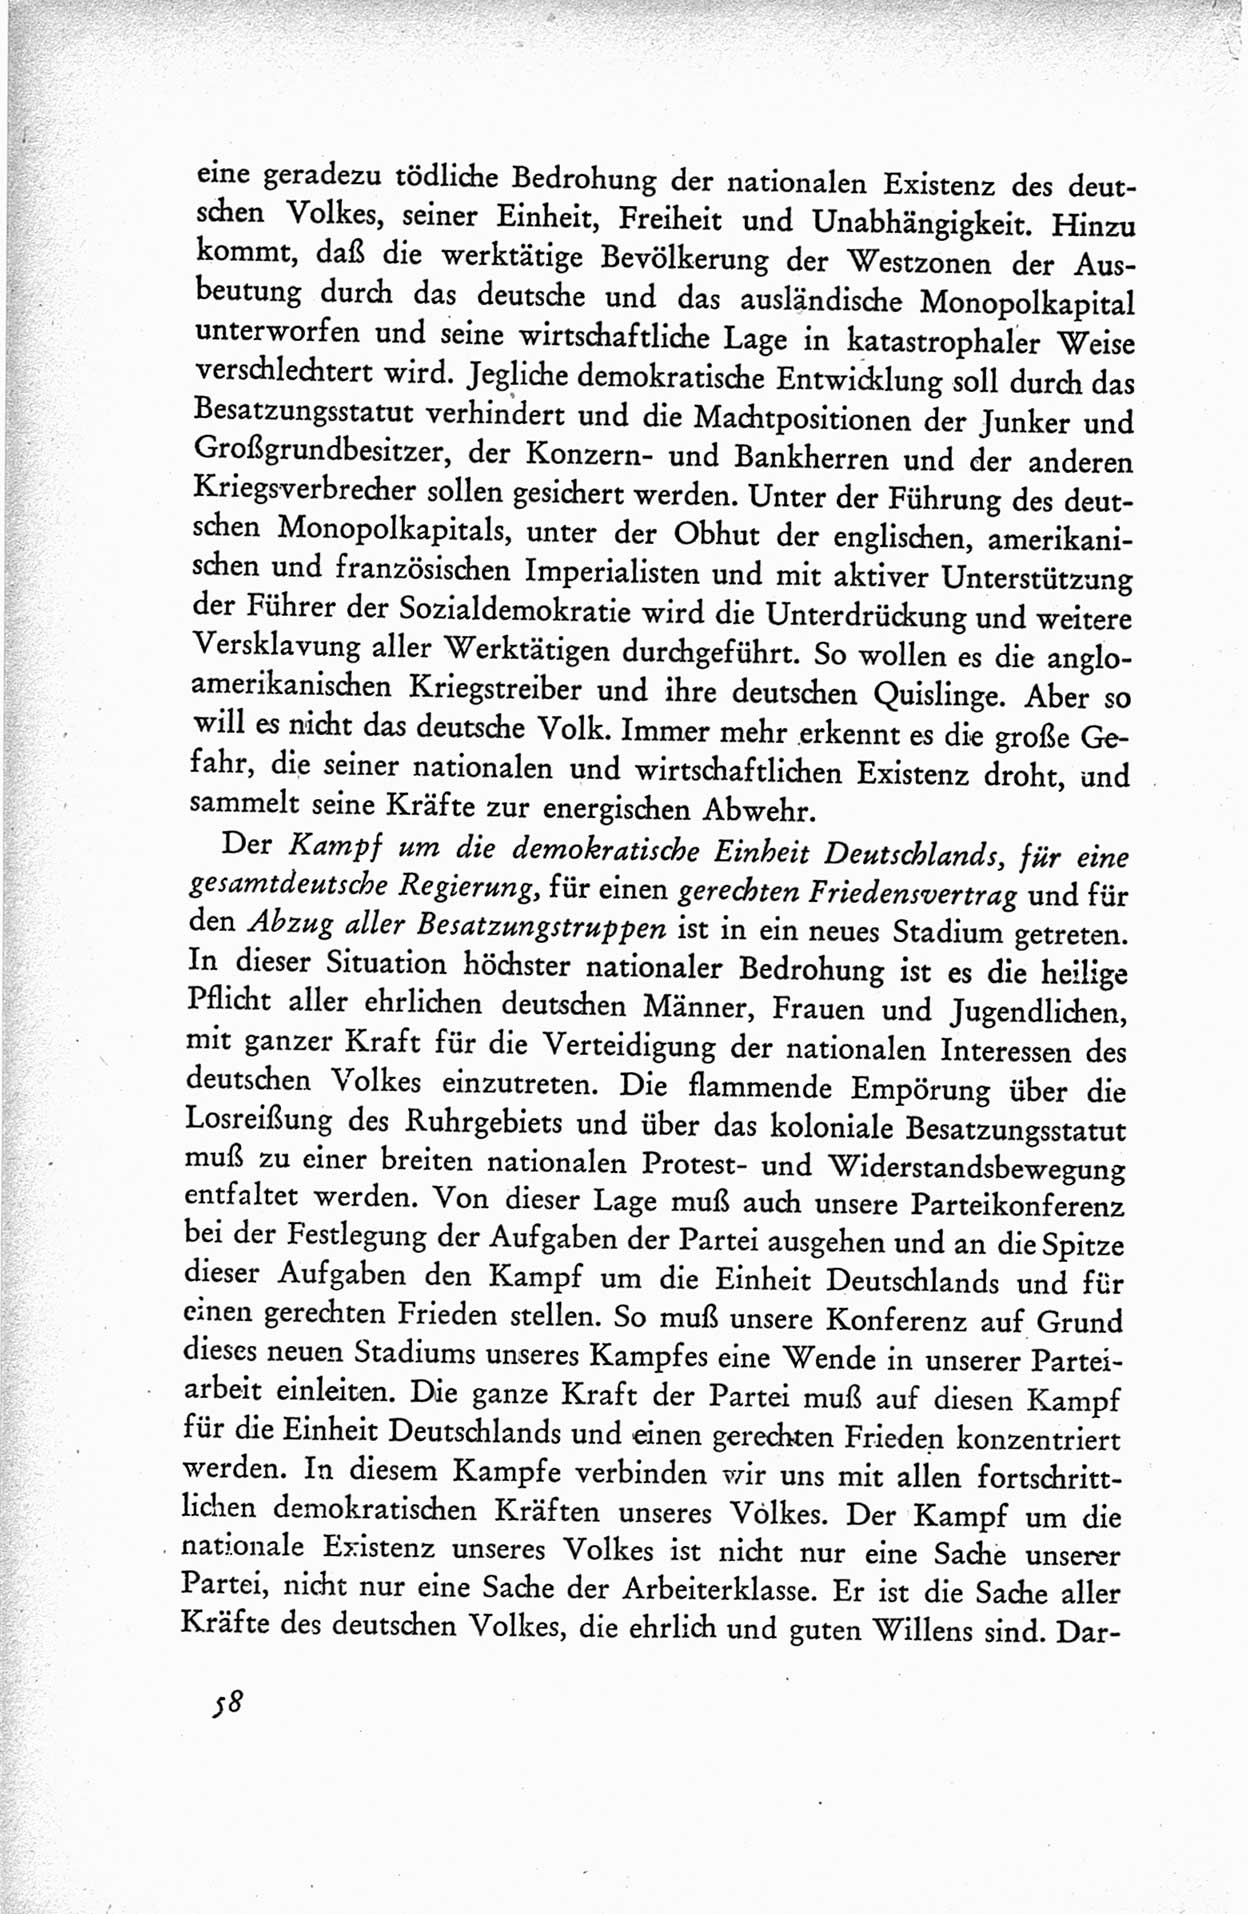 Protokoll der ersten Parteikonferenz der Sozialistischen Einheitspartei Deutschlands (SED) [Sowjetische Besatzungszone (SBZ) Deutschlands] vom 25. bis 28. Januar 1949 im Hause der Deutschen Wirtschaftskommission zu Berlin, Seite 58 (Prot. 1. PK SED SBZ Dtl. 1949, S. 58)